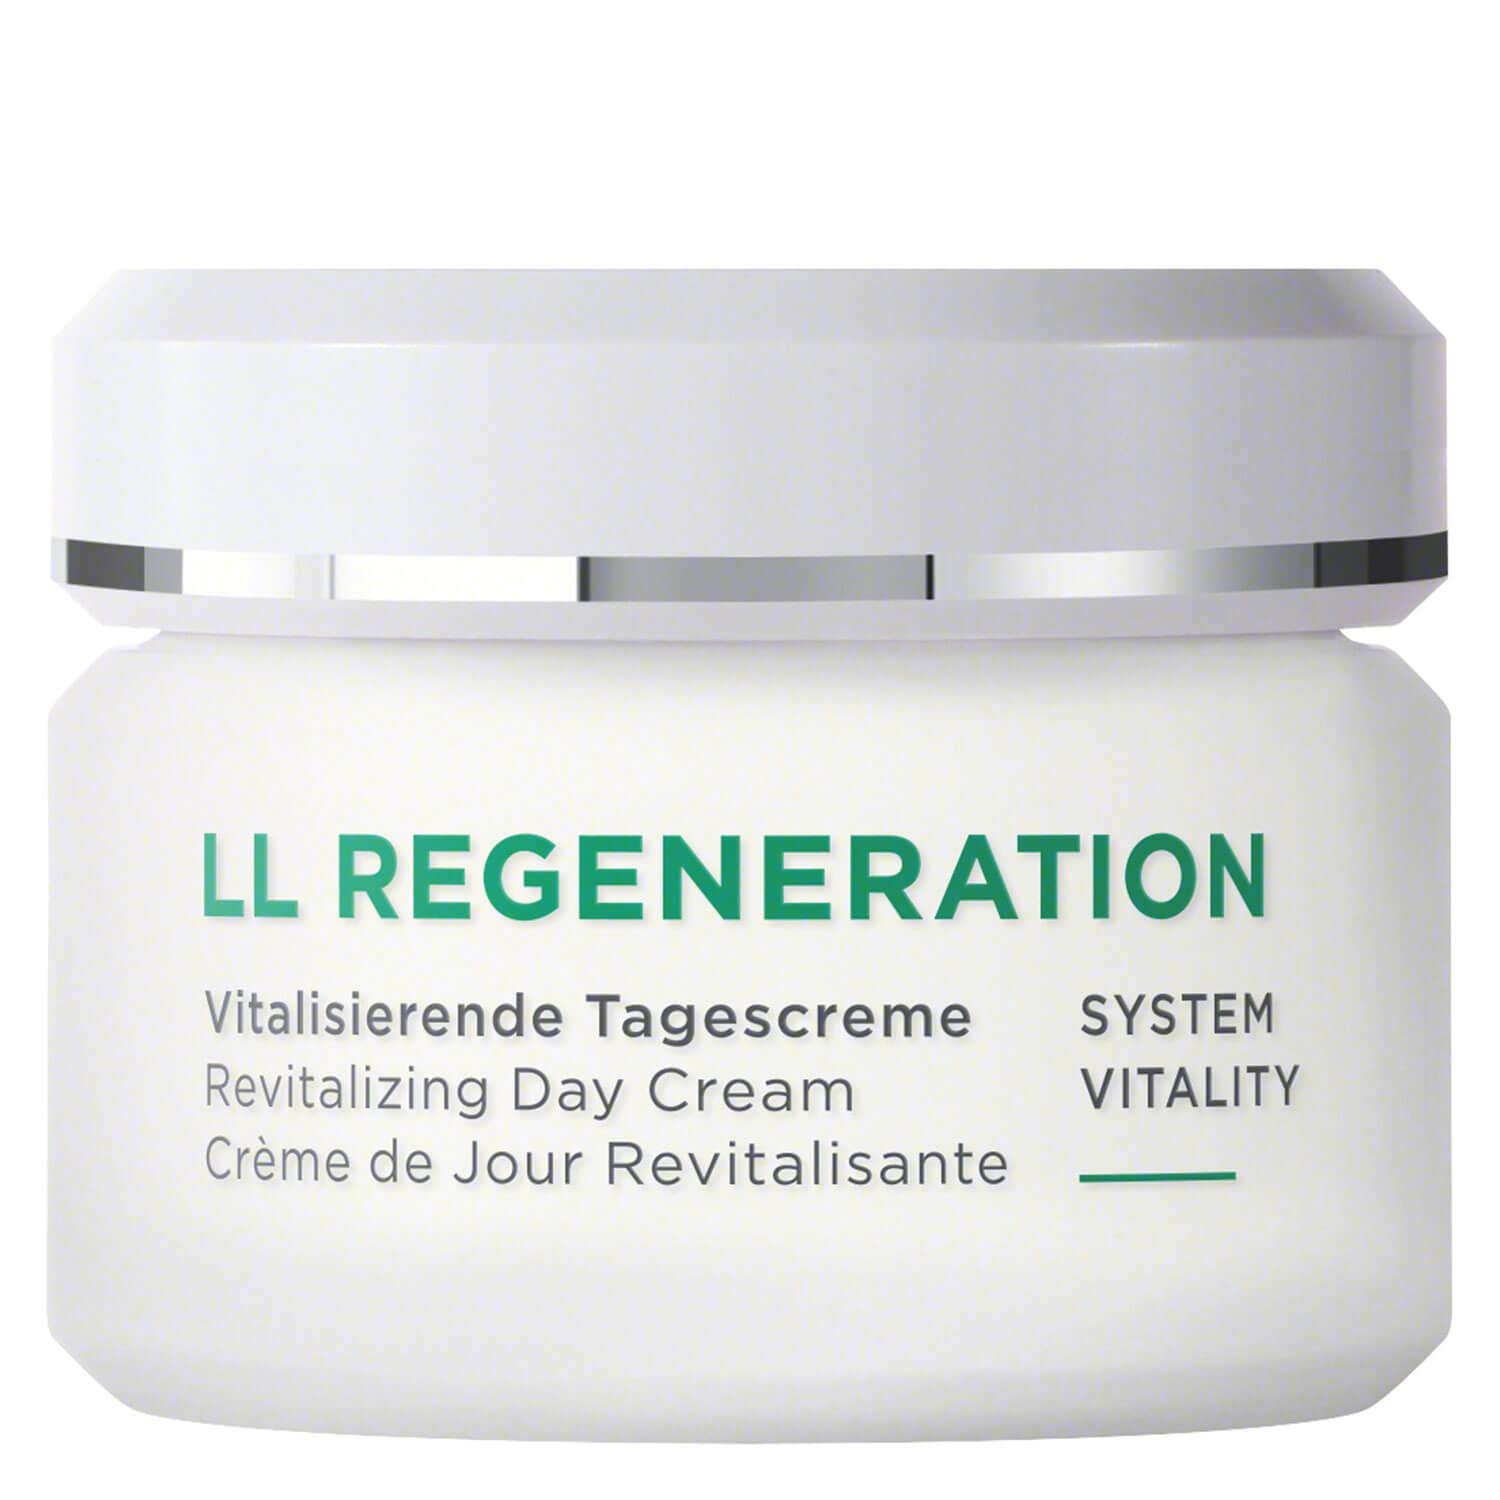 LL Regeneration - Crème de Jour Revitalisante